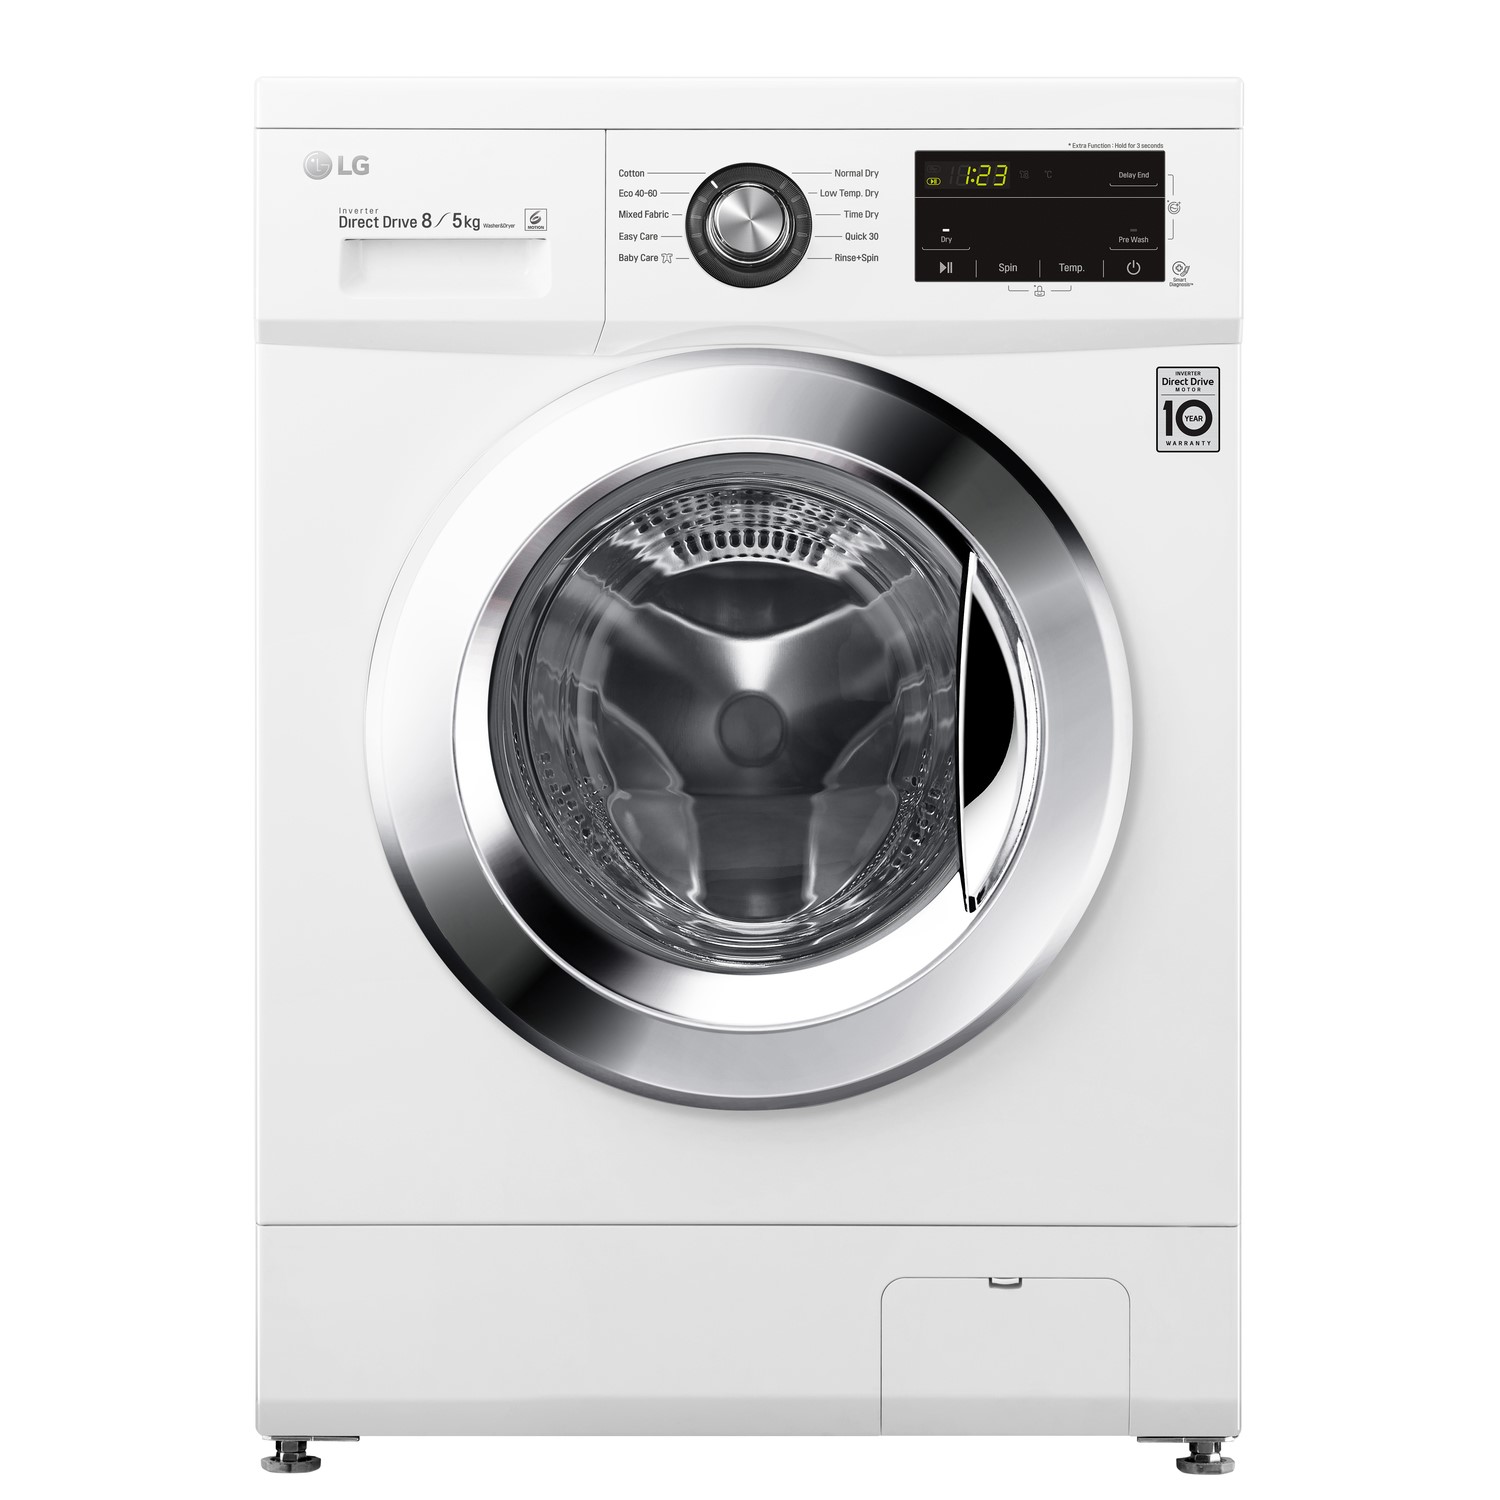 LG Direct Drive FWMT85WE 8kg Washer Dryer